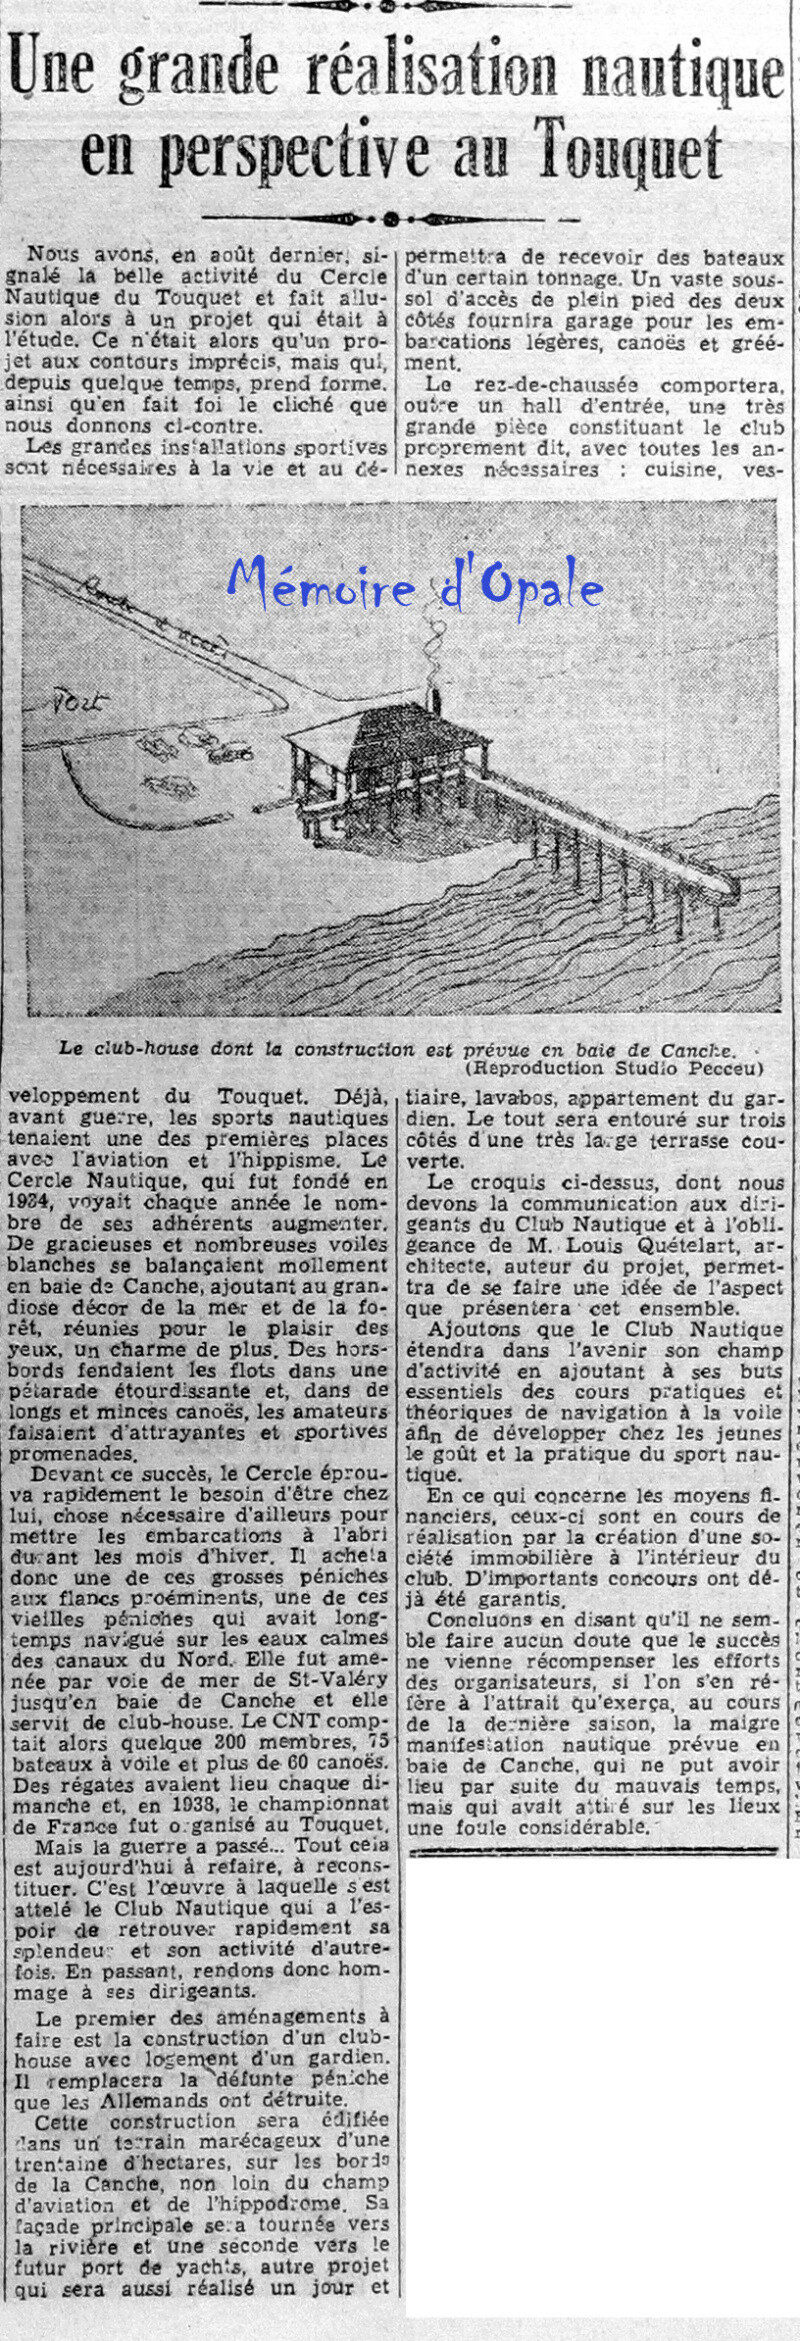 La Voix du Nord – 1946 – Photos Alain ÉVRARD pour Mémoire d’Opale - Page 37 La_v1441